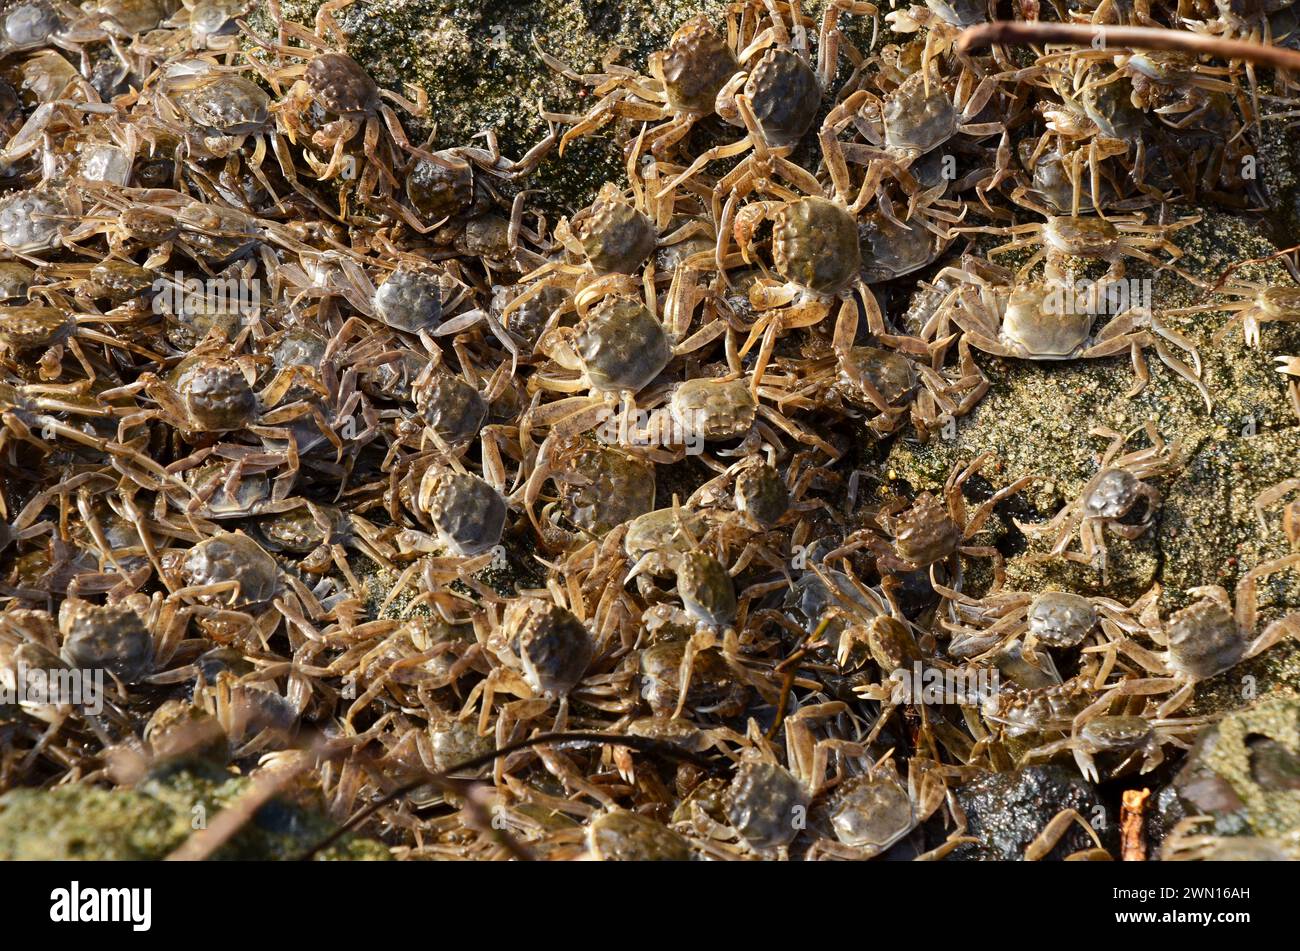 Eriocheir sinensis, Chinesische Wollhandkrabben, crabe moufle chinois, crabe poilu de Shanghai, Geesthacht Banque D'Images